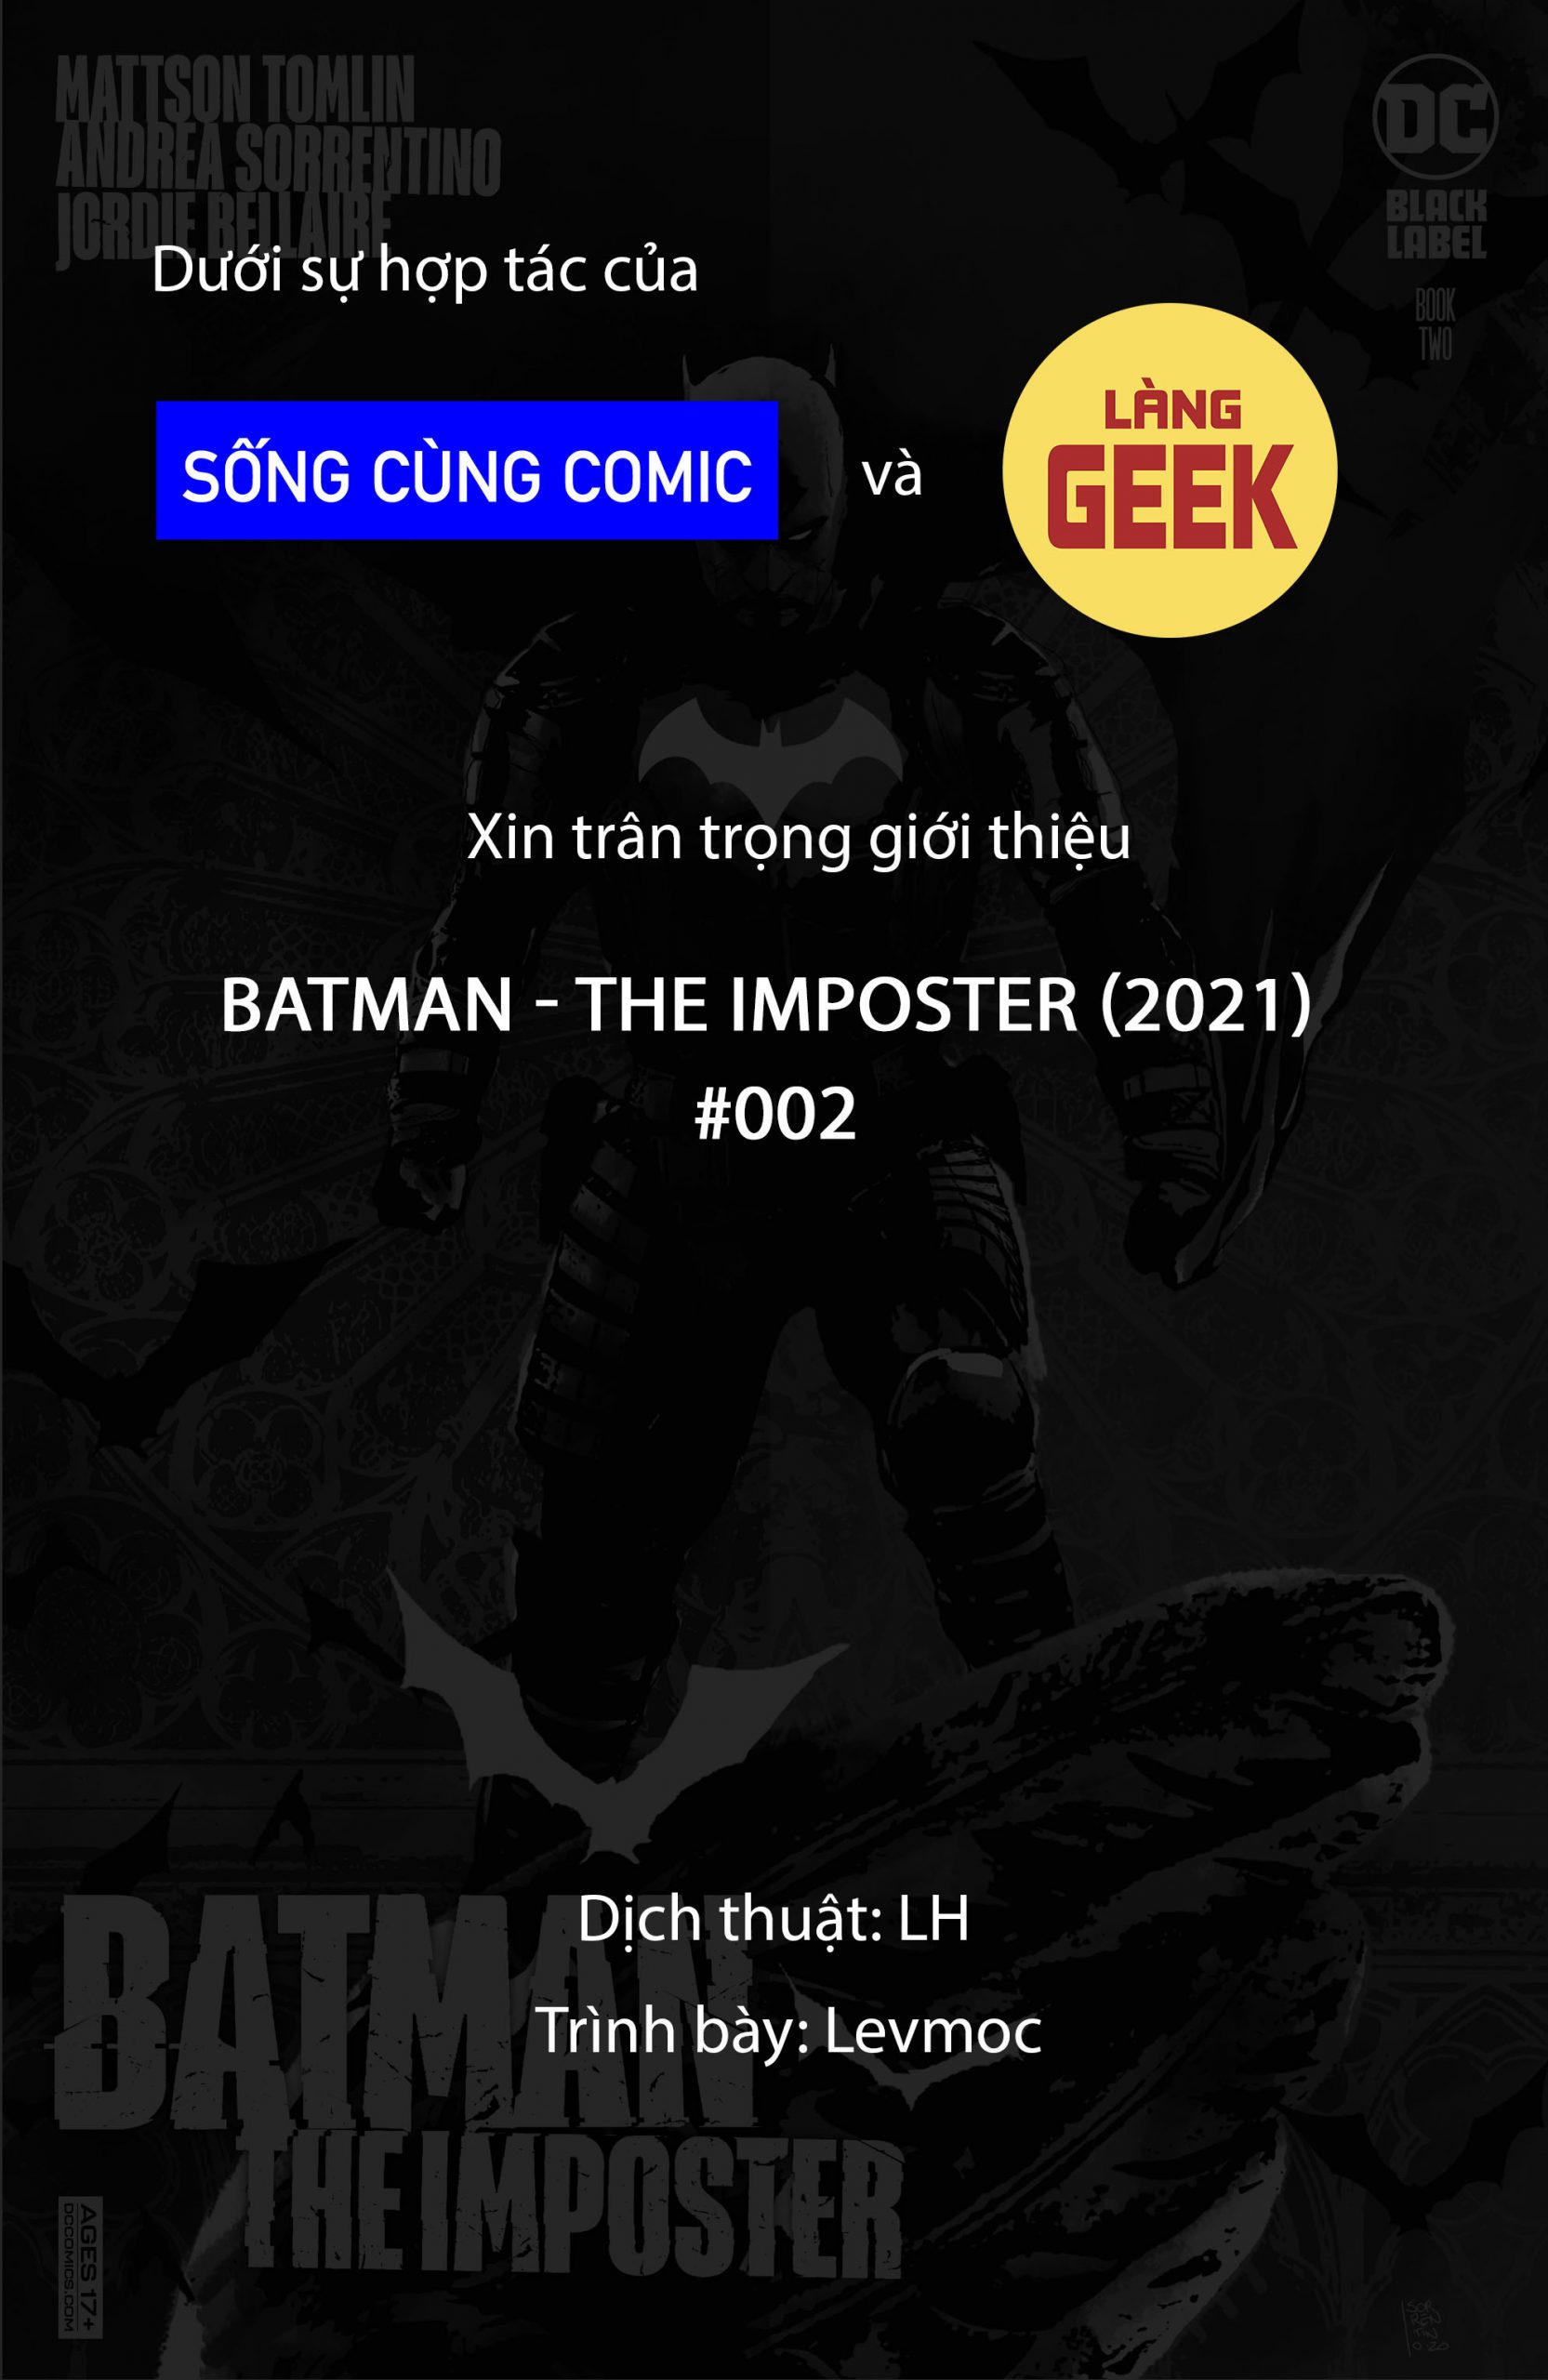 https://langgeek.net/wp-content/webpc-passthru.php?src=https://langgeek.net/wp-content/uploads/2021/11/Batman-The-Imposter-2021-002-00-scaled.jpg&nocache=1